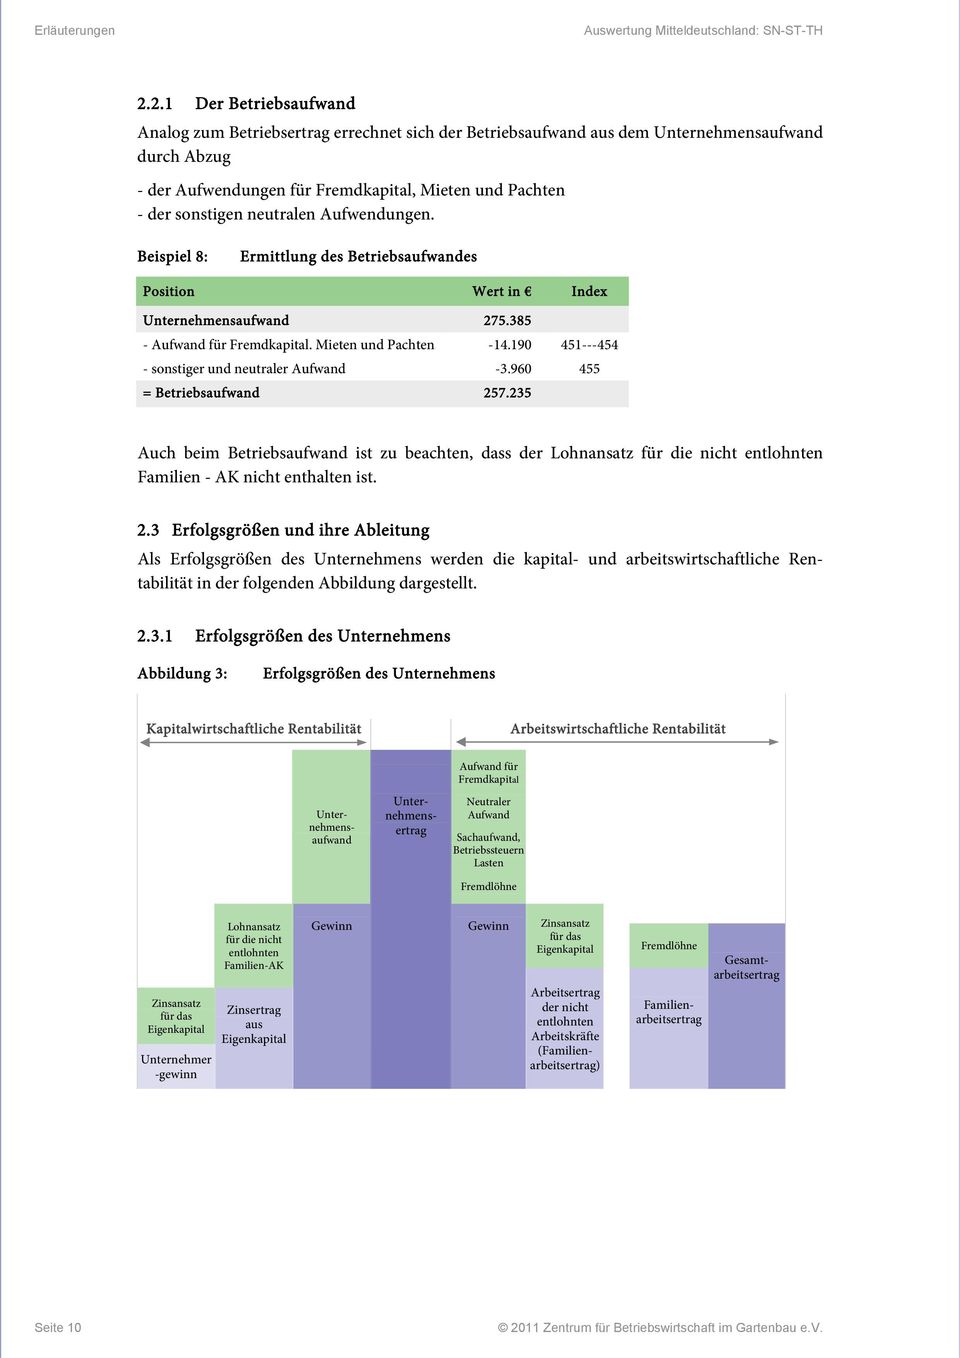 neutralen Aufwendungen. Beispiel 8: Ermittlung des Betriebsaufwandes Position Wert in Index Unternehmensaufwand 275.385 - Aufwand für Fremdkapital. Mieten und Pachten -14.